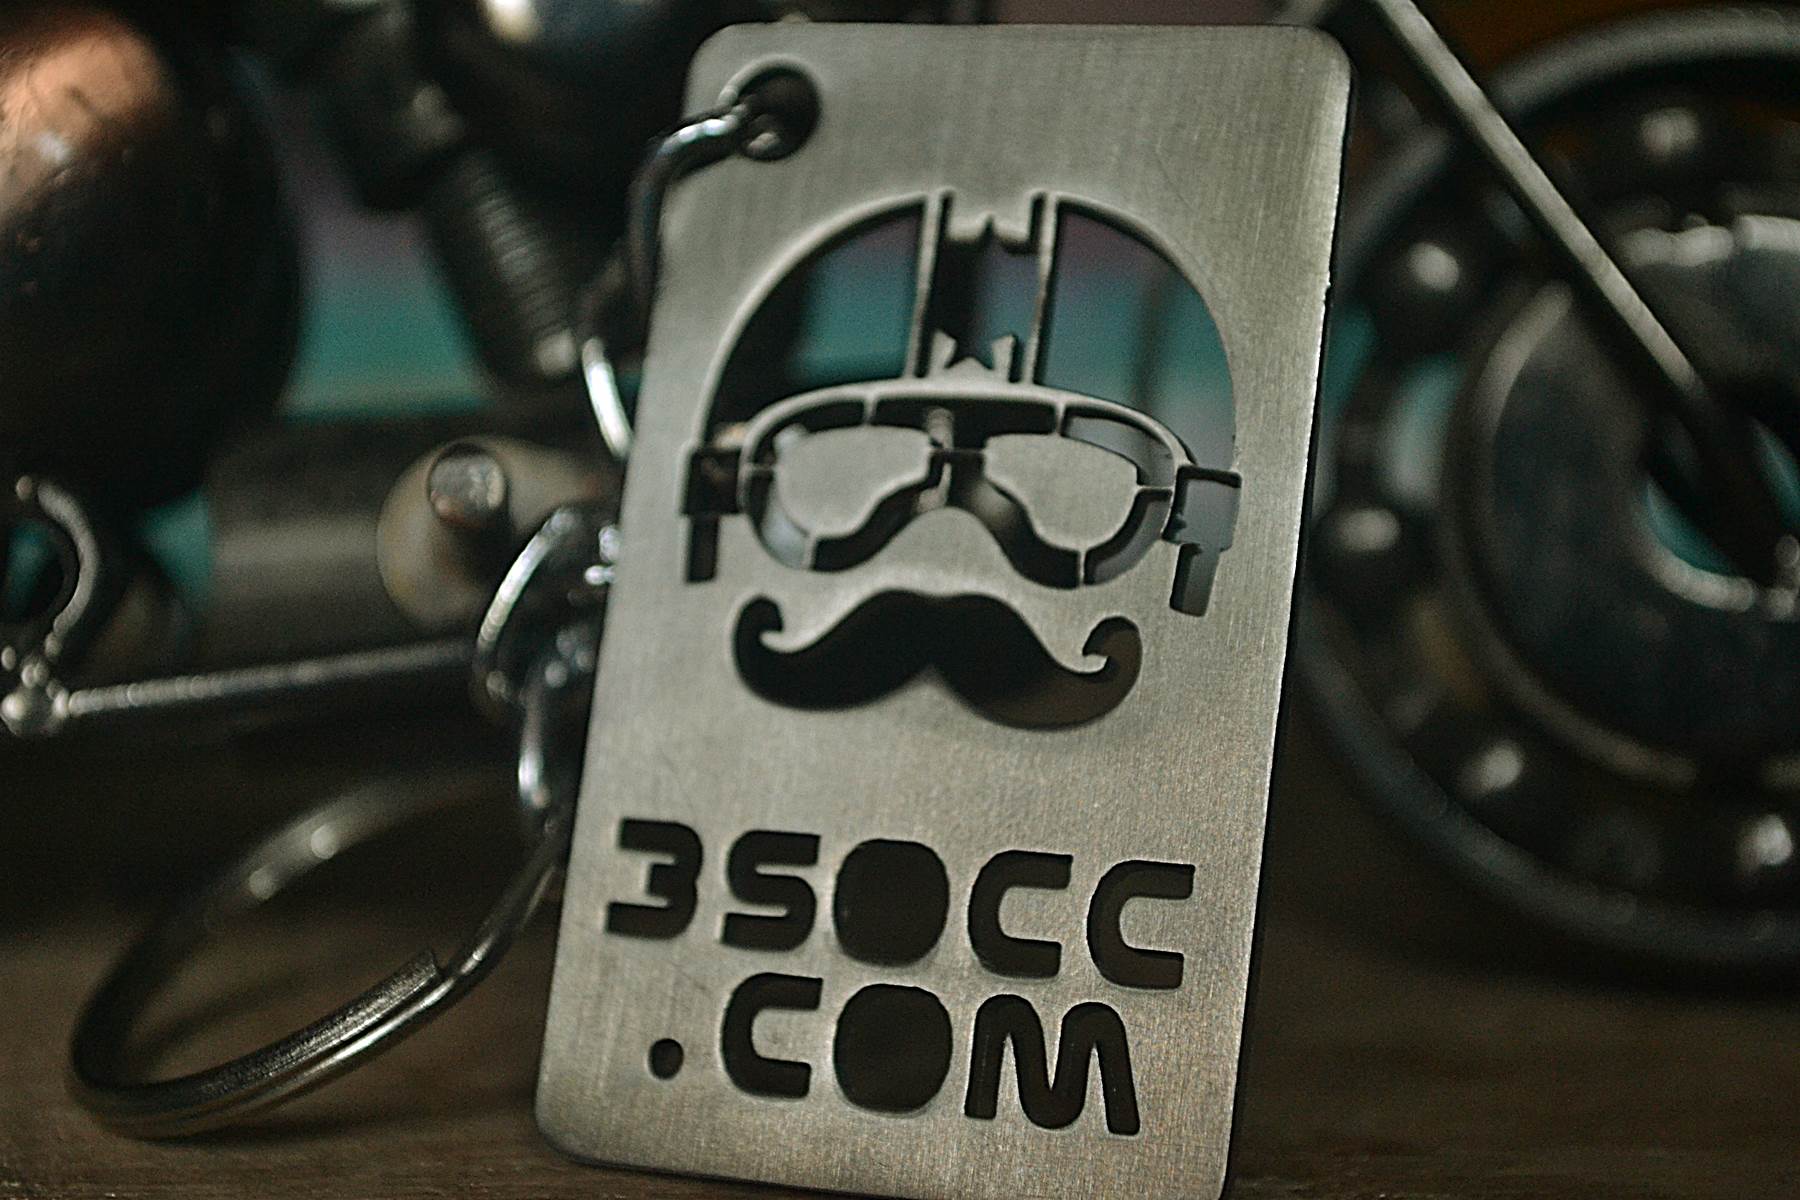 KeyChainVilla 350cc.com